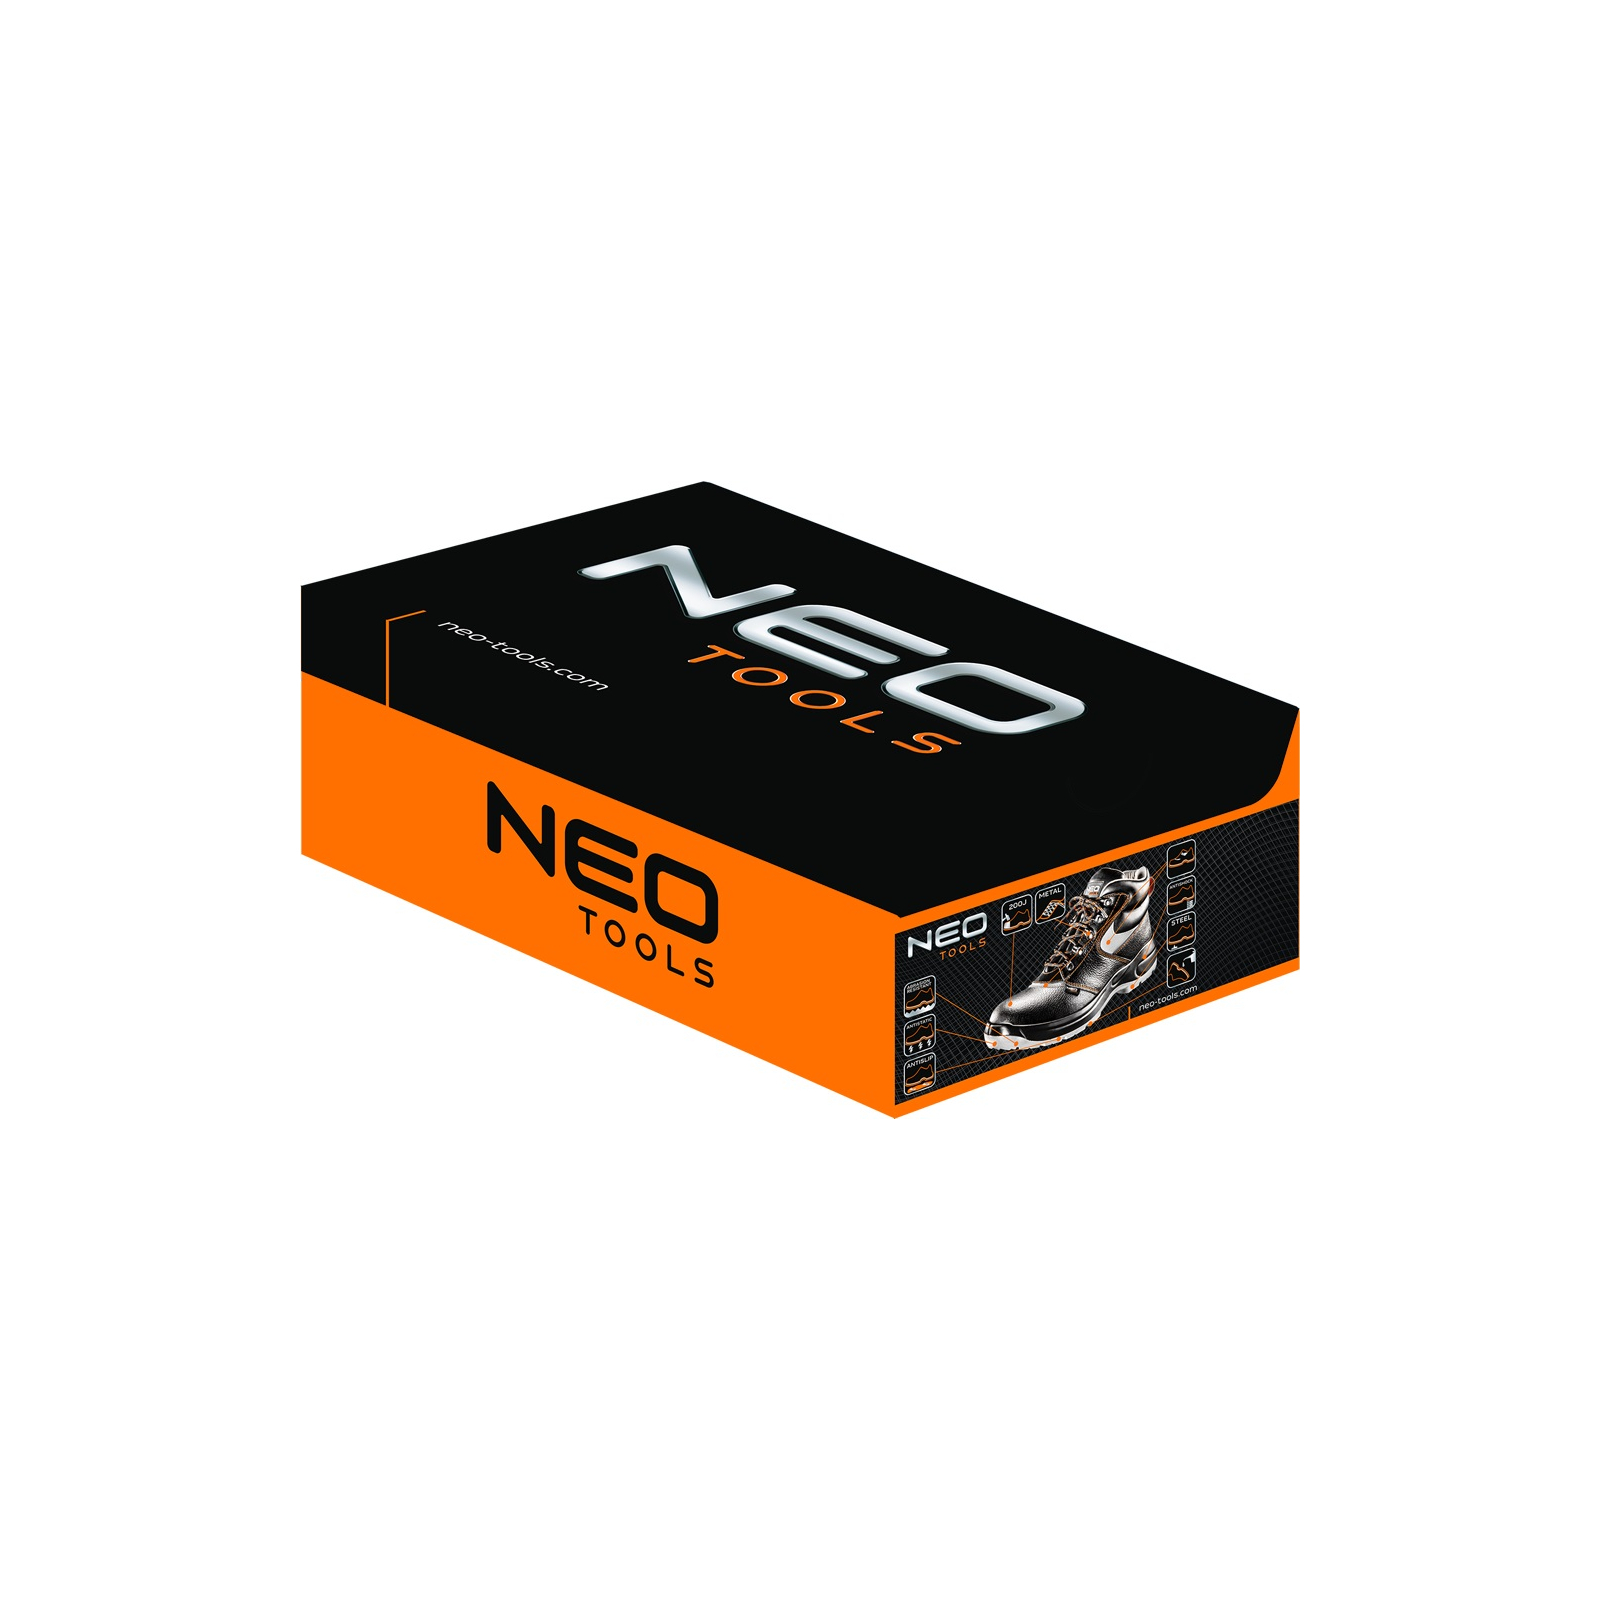 Ботинки рабочие Neo Tools кожа, антипрокол, подносок до 200 Дж, S1P SRA, СЕ, p.44 (82-025) изображение 2